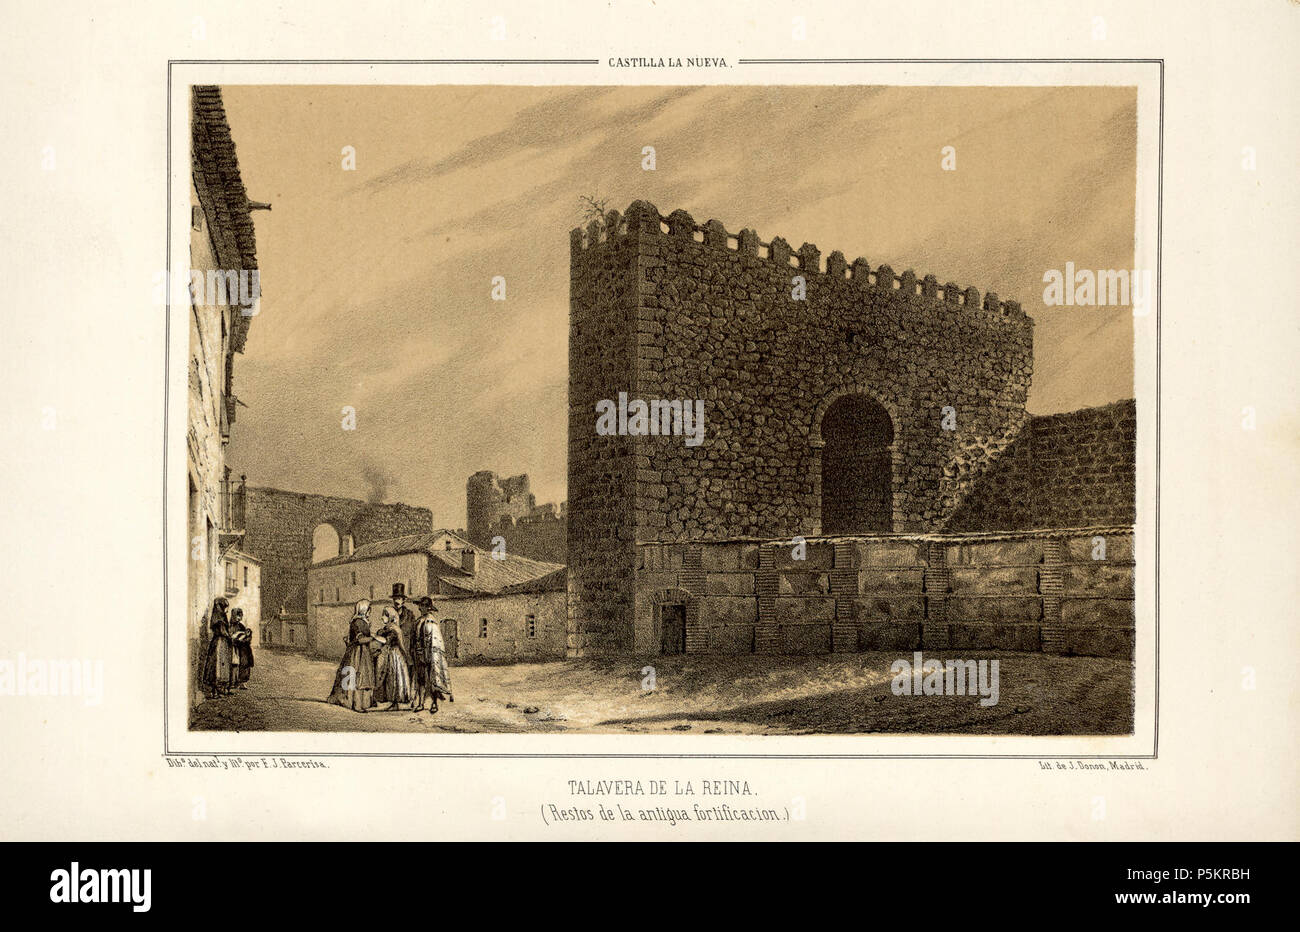 1853, Recuerdos y bellezas de España, Castilla la Nueva, tomo II, Talavera de la Reina, restos de la antigua fortificación. Stock Photo